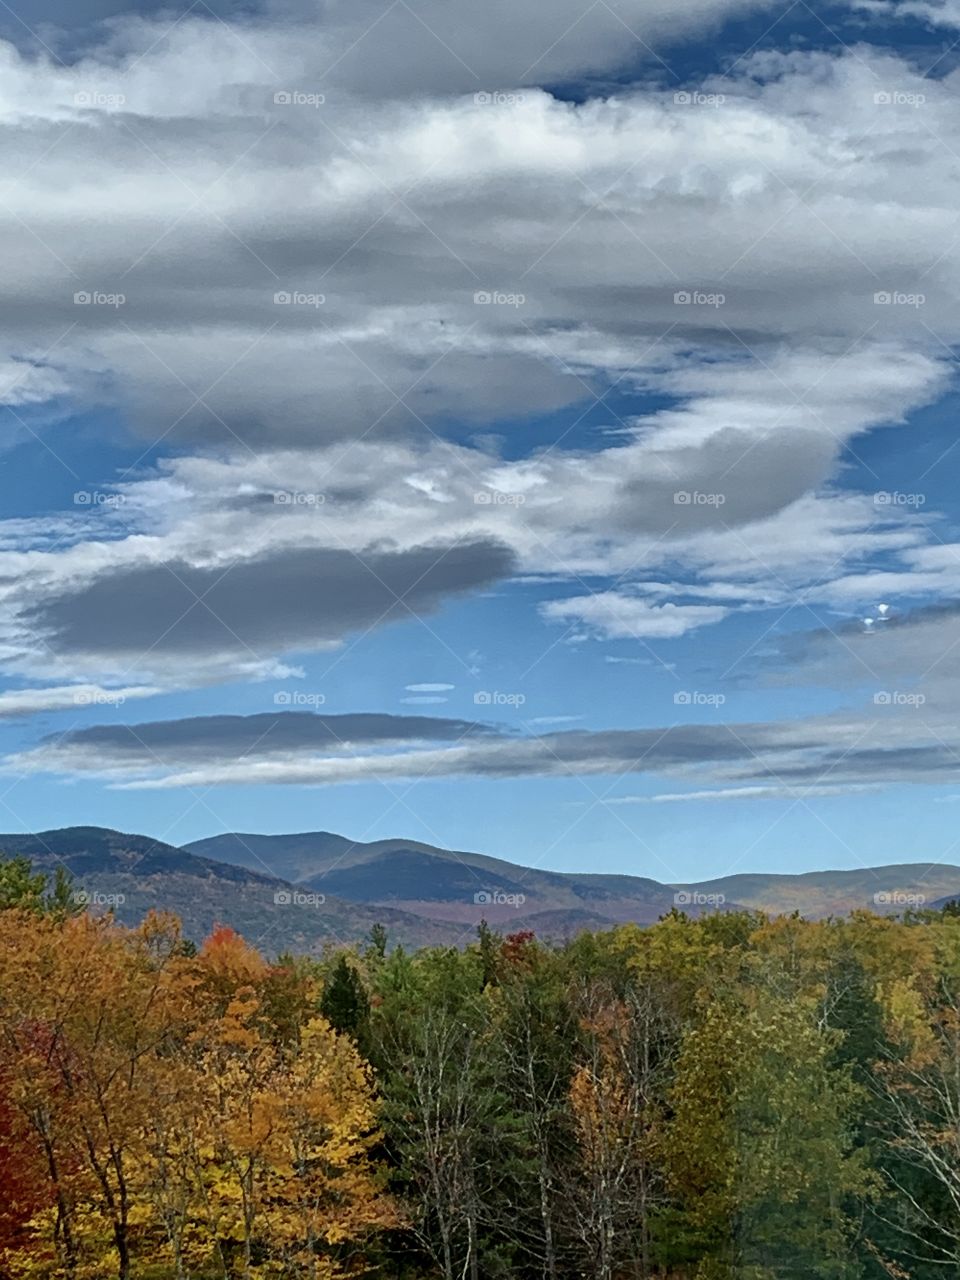 White Mountains view, New Hampshire, USA